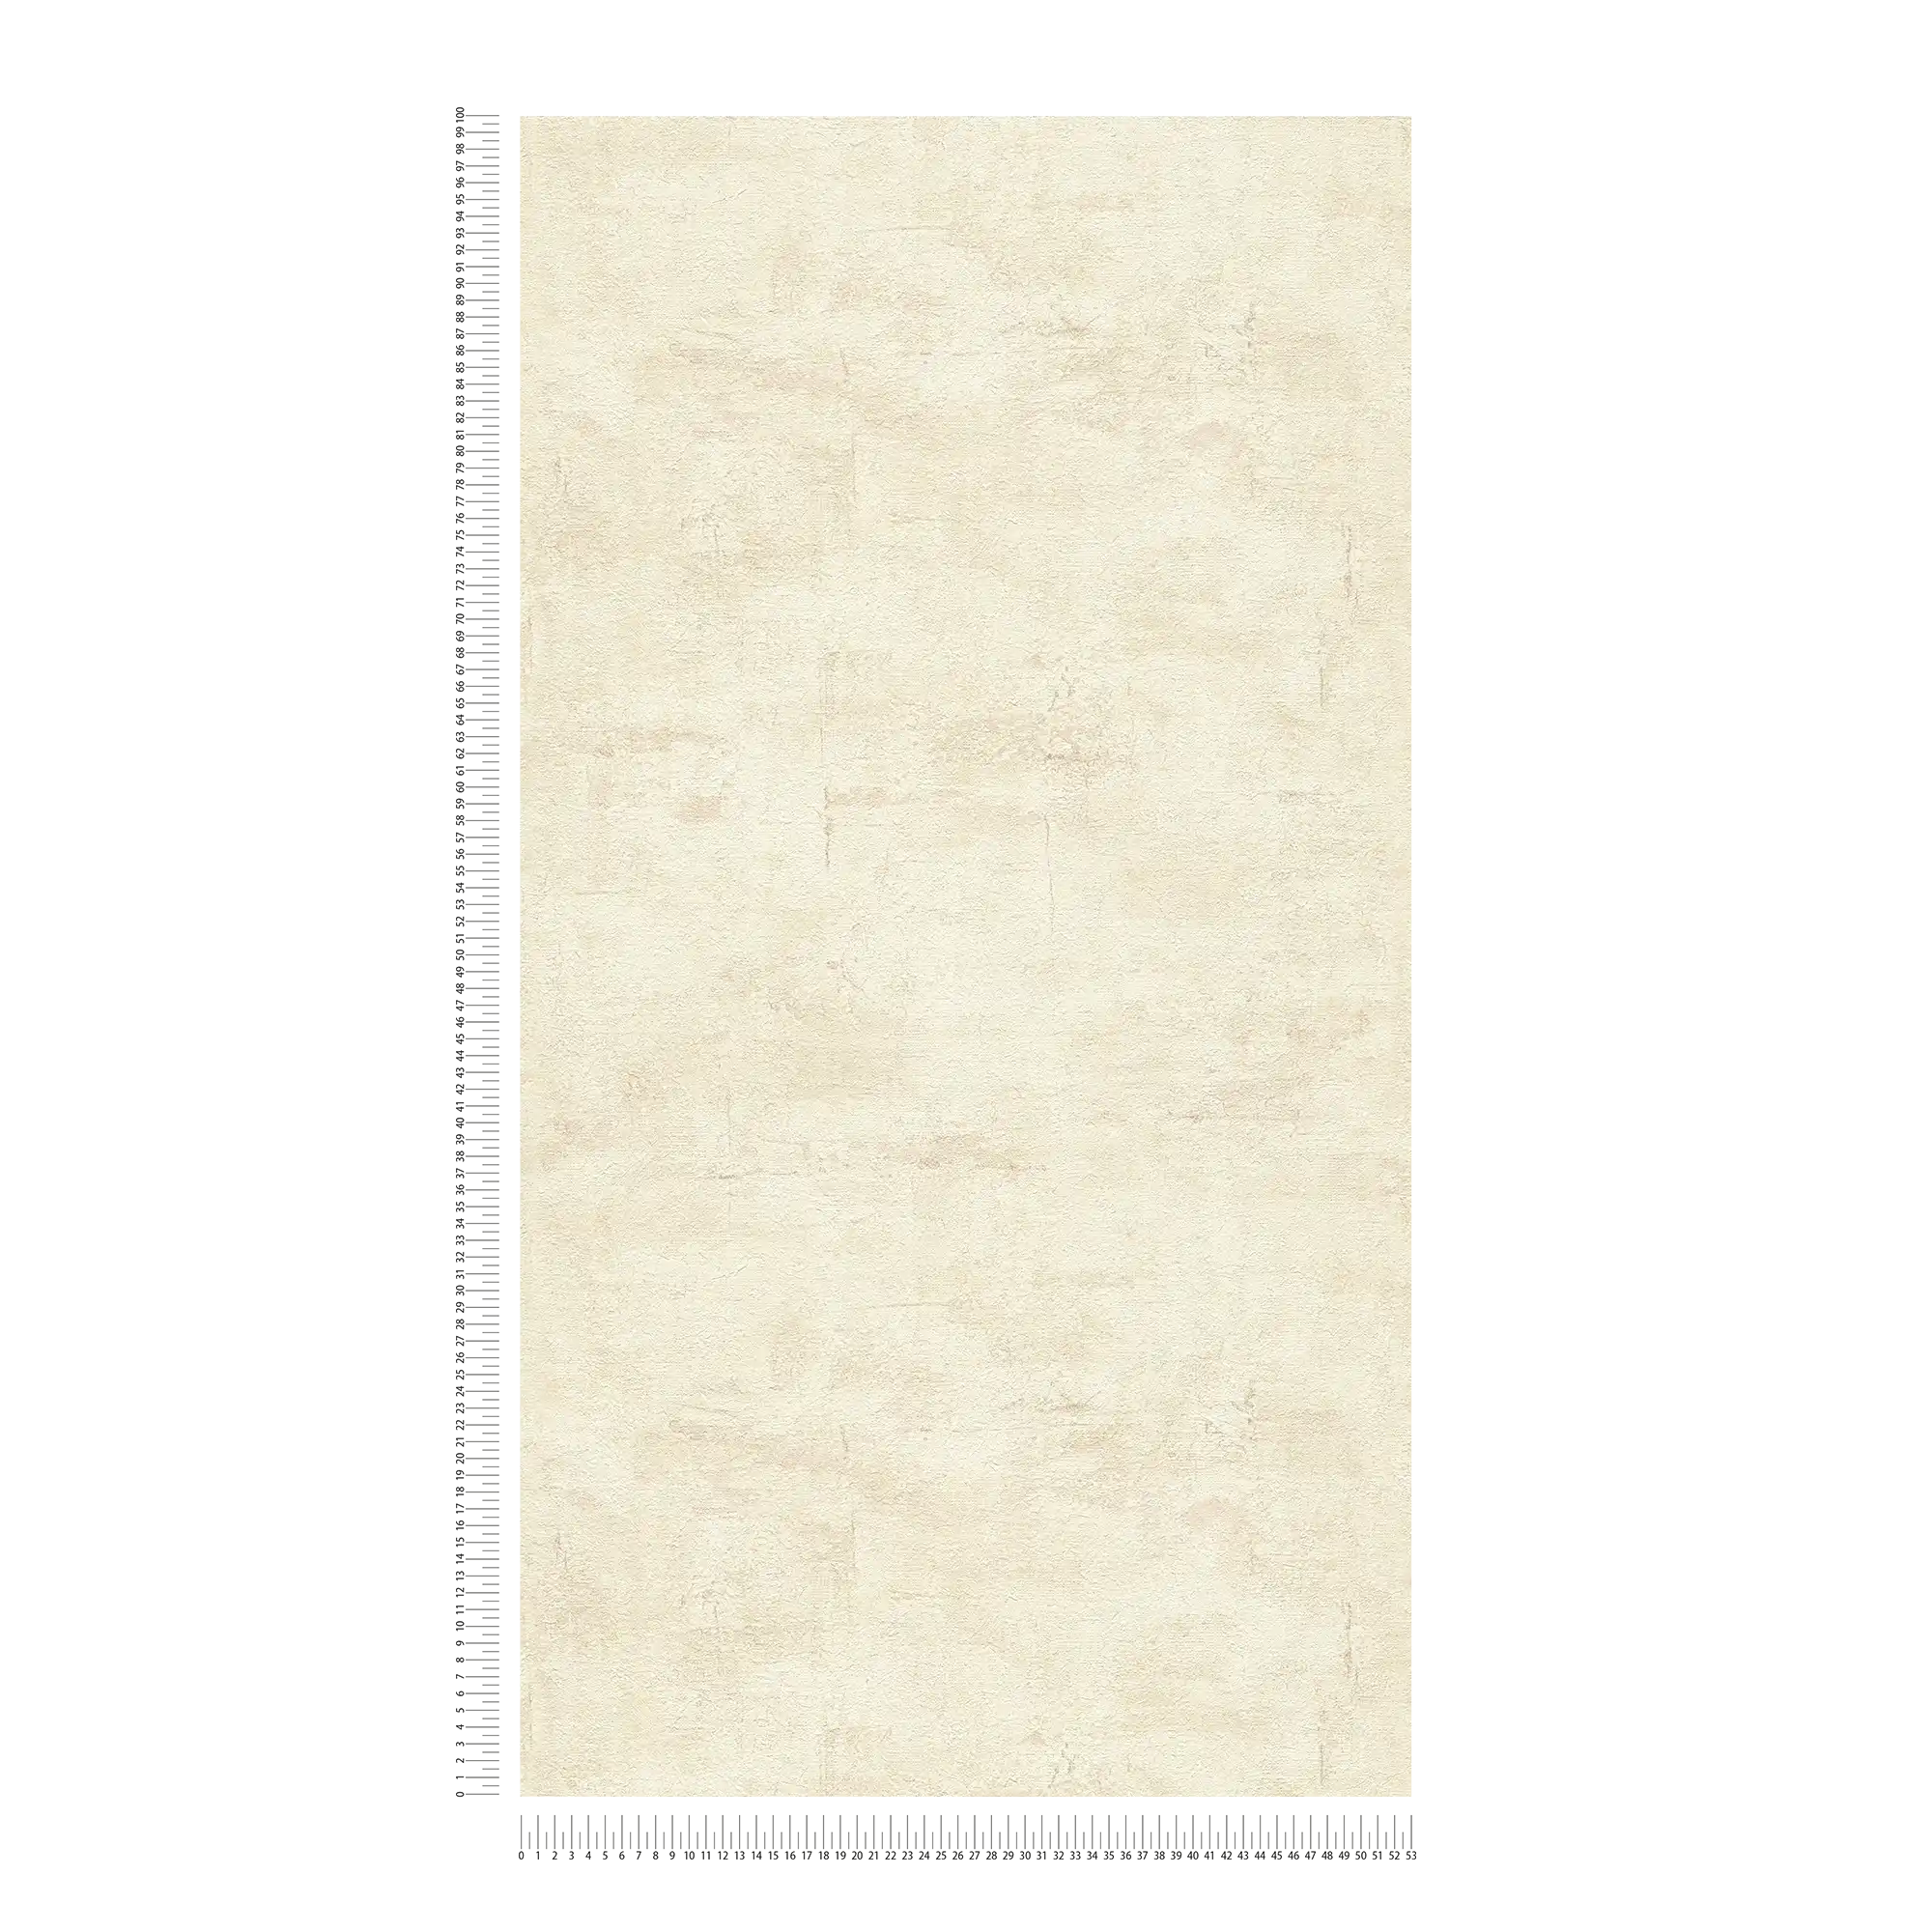             Textured wallpaper with light beige plaster look - beige, brown
        